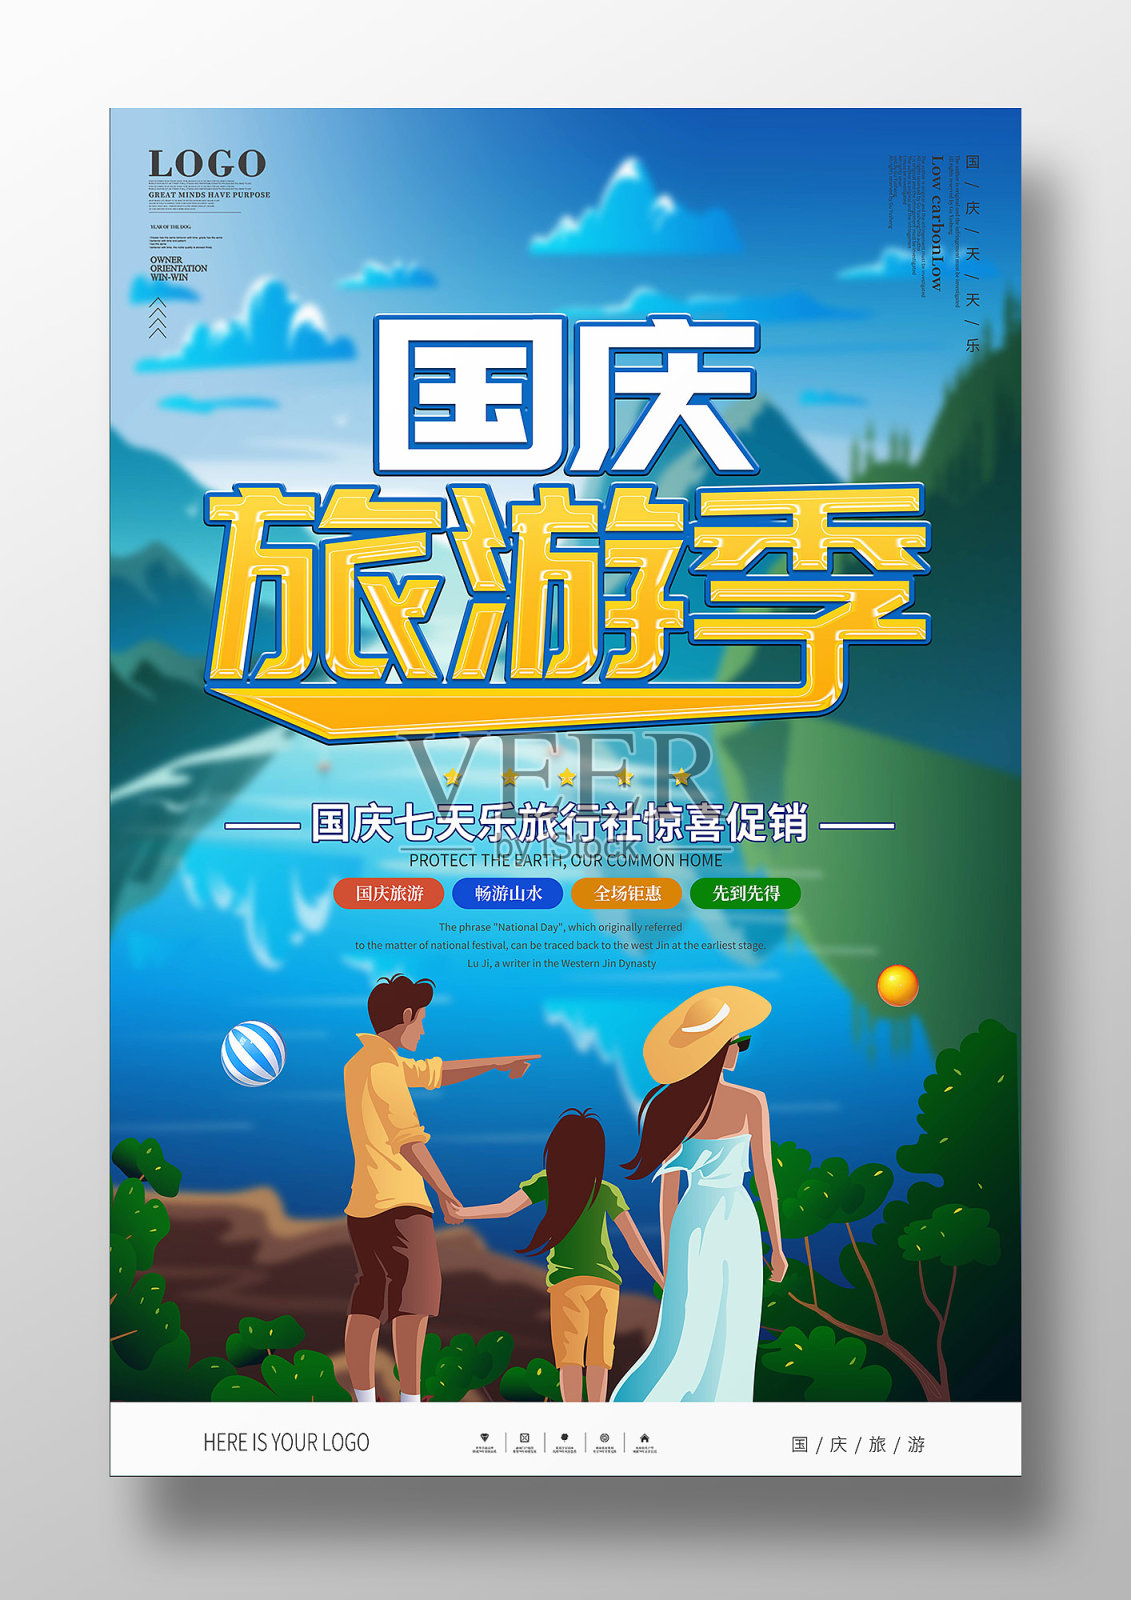 卡通国庆节旅游宣传广告海报设计模板素材